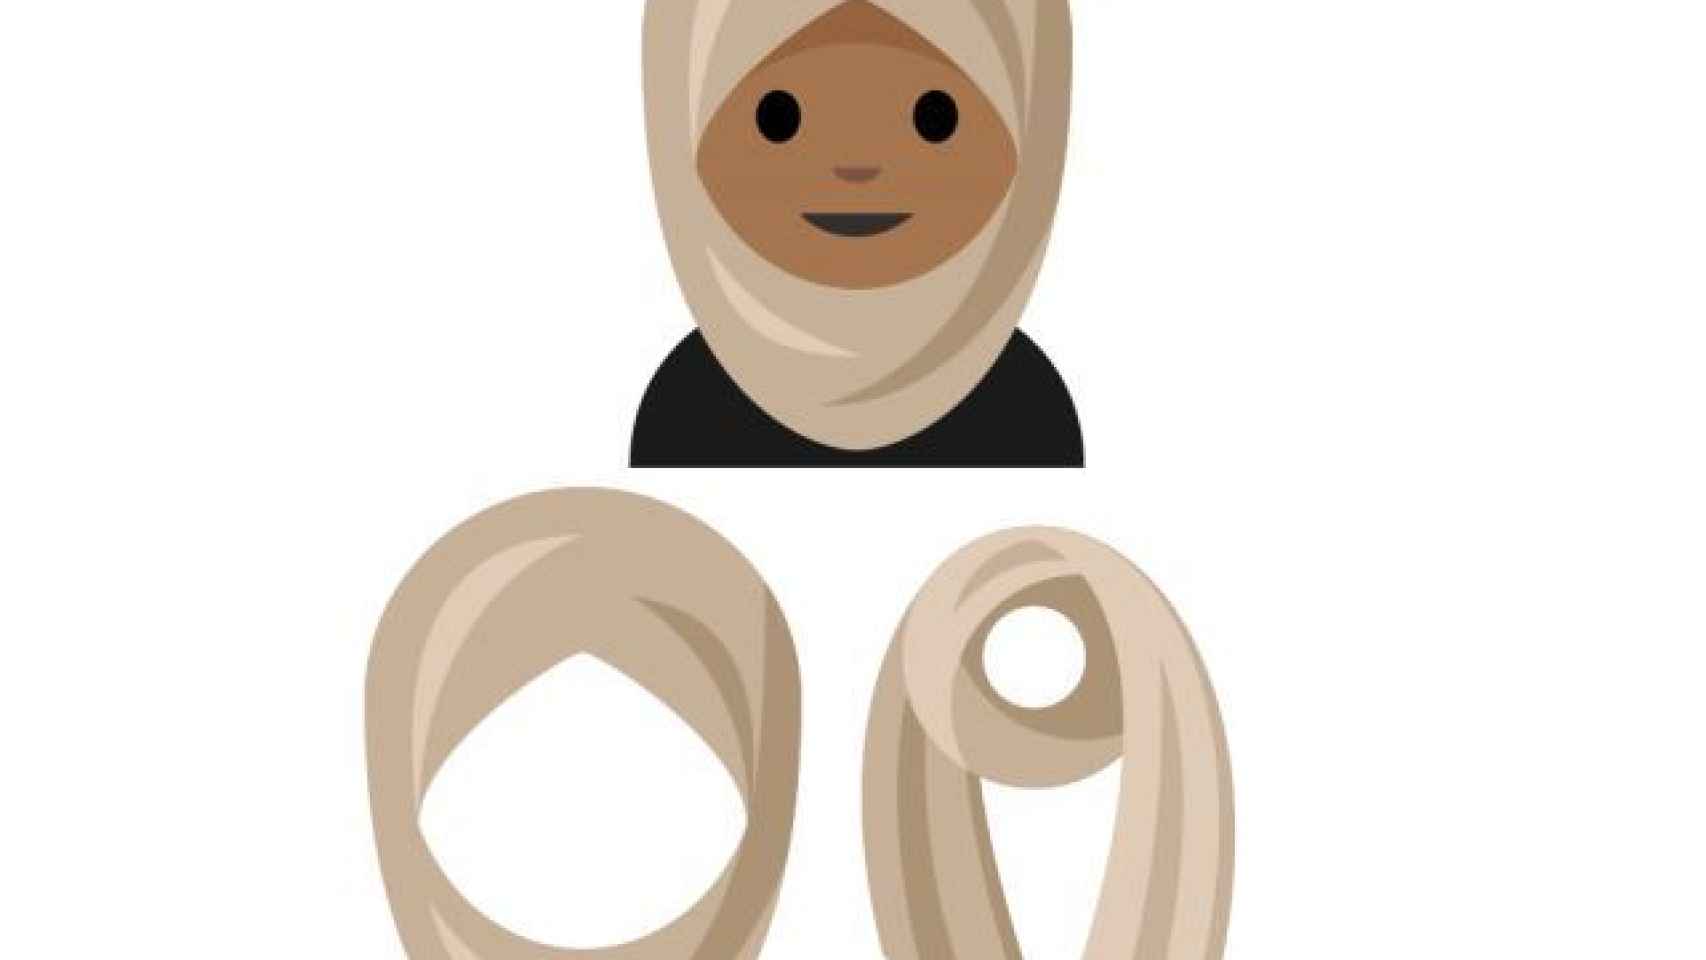 Whatsapp incluirá el hijab entre los nuevos emojis de 2017